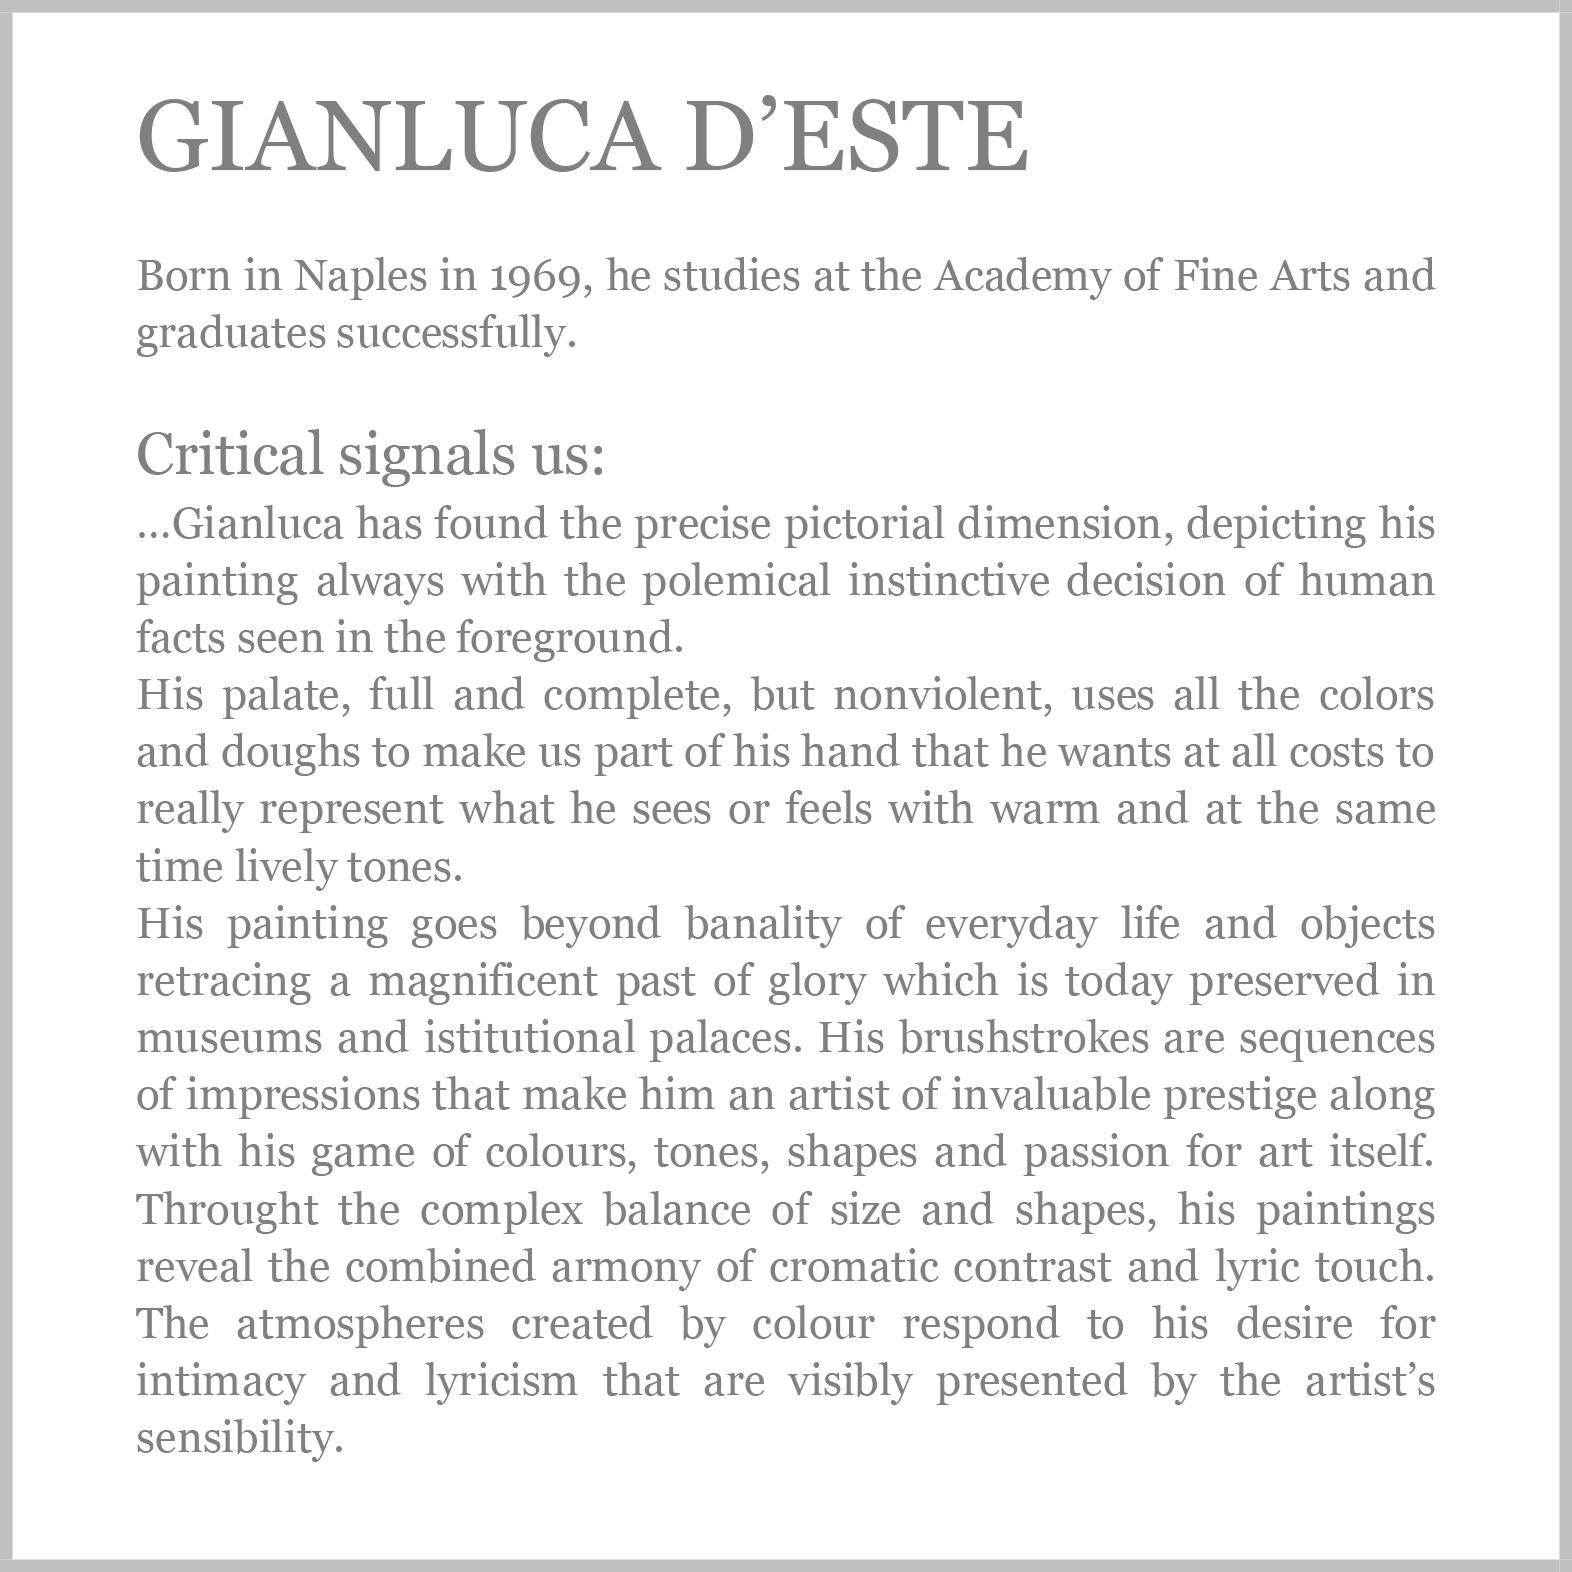 Fleurs - Gianluca d'Este Italia 2000 - Huile sur toile cm. 76x64

Il s'agit de sa réinterprétation d'un grand tableau de maître ancien 